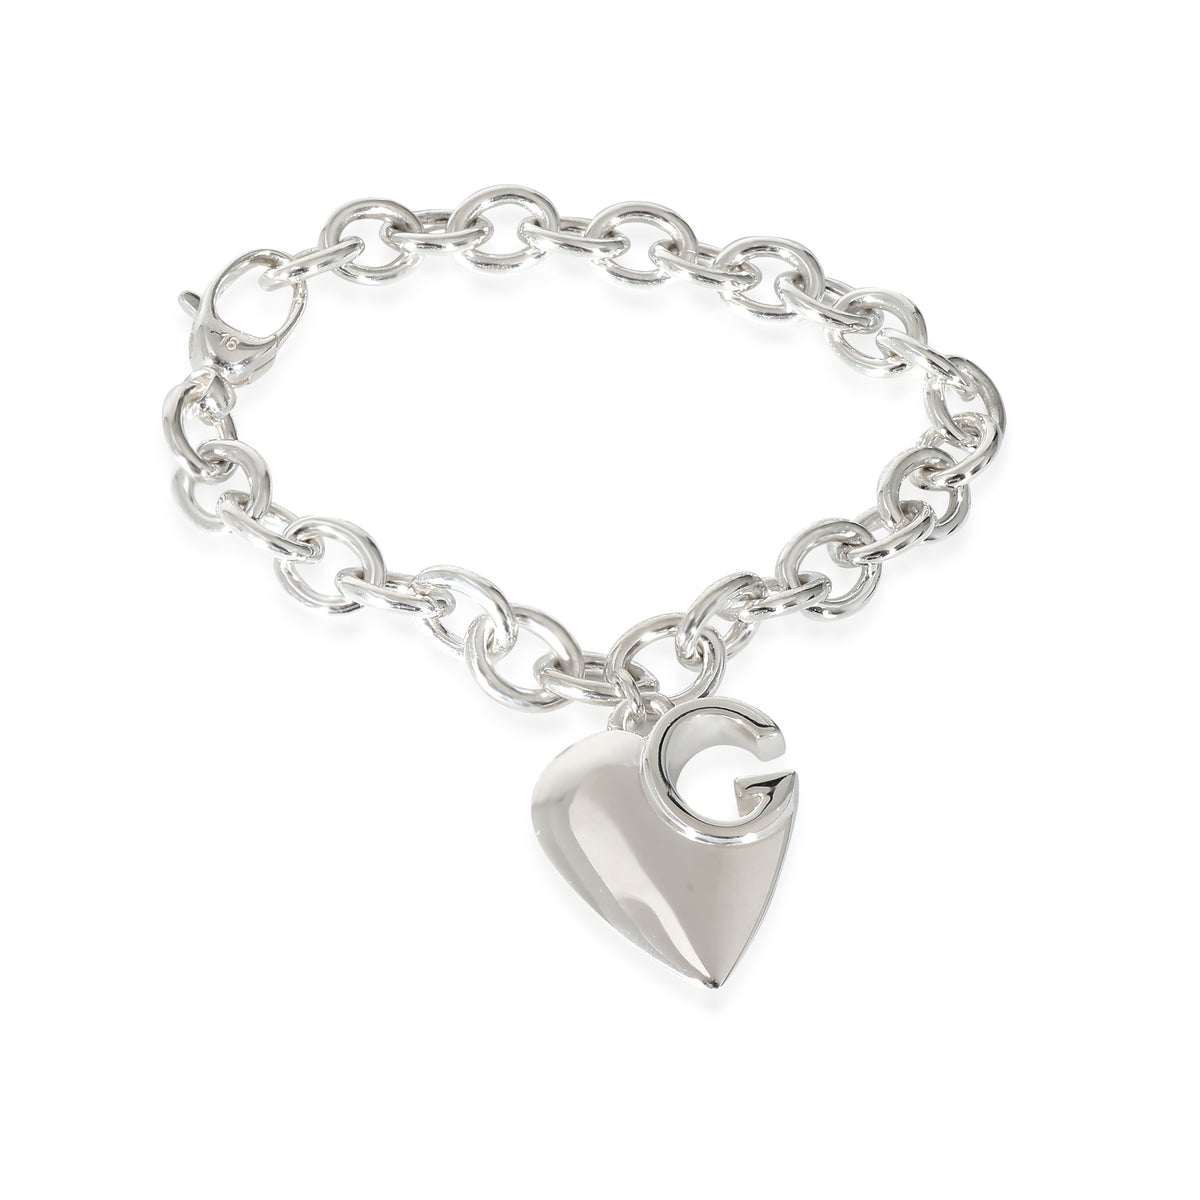 GG Cutout Heart Charm Bracelet in Sterling Silver